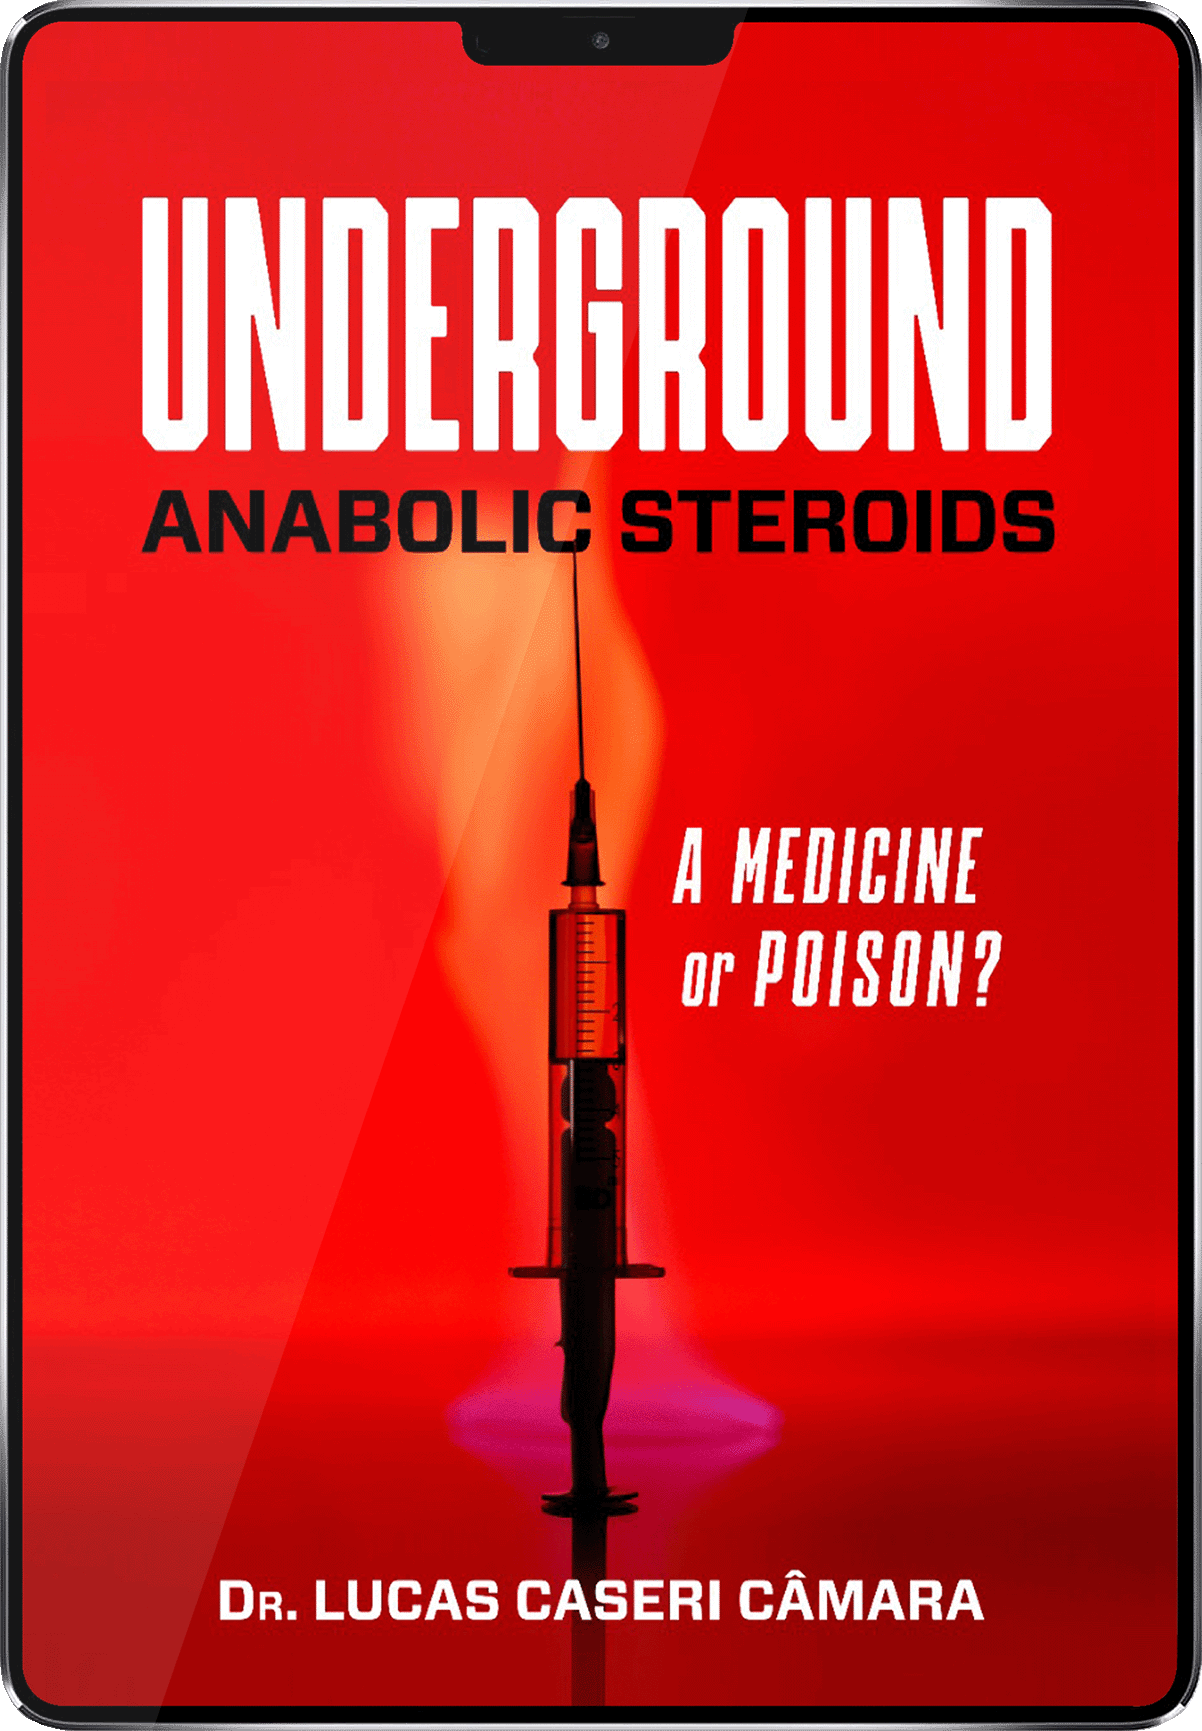 underground anabolic steroids